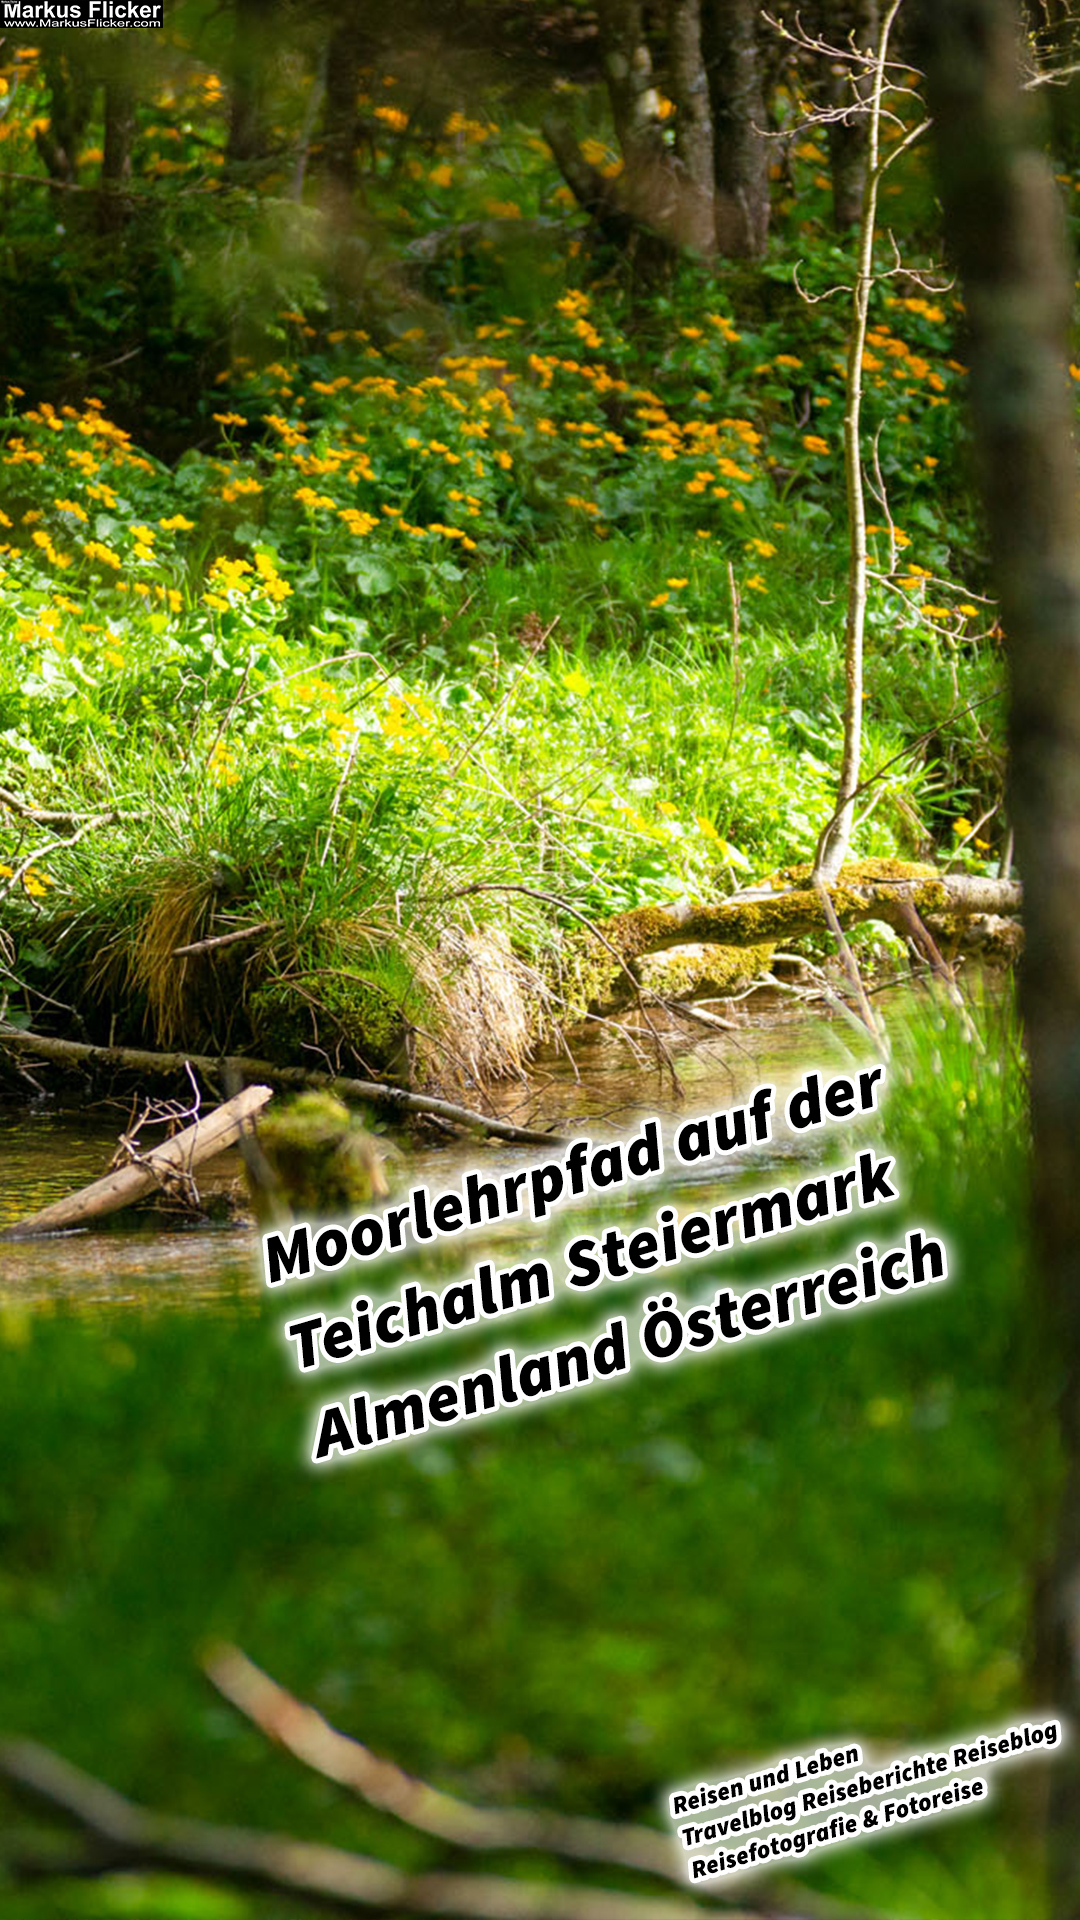 Moorlehrpfad auf der Teichalm Steiermark Almenland Österreich